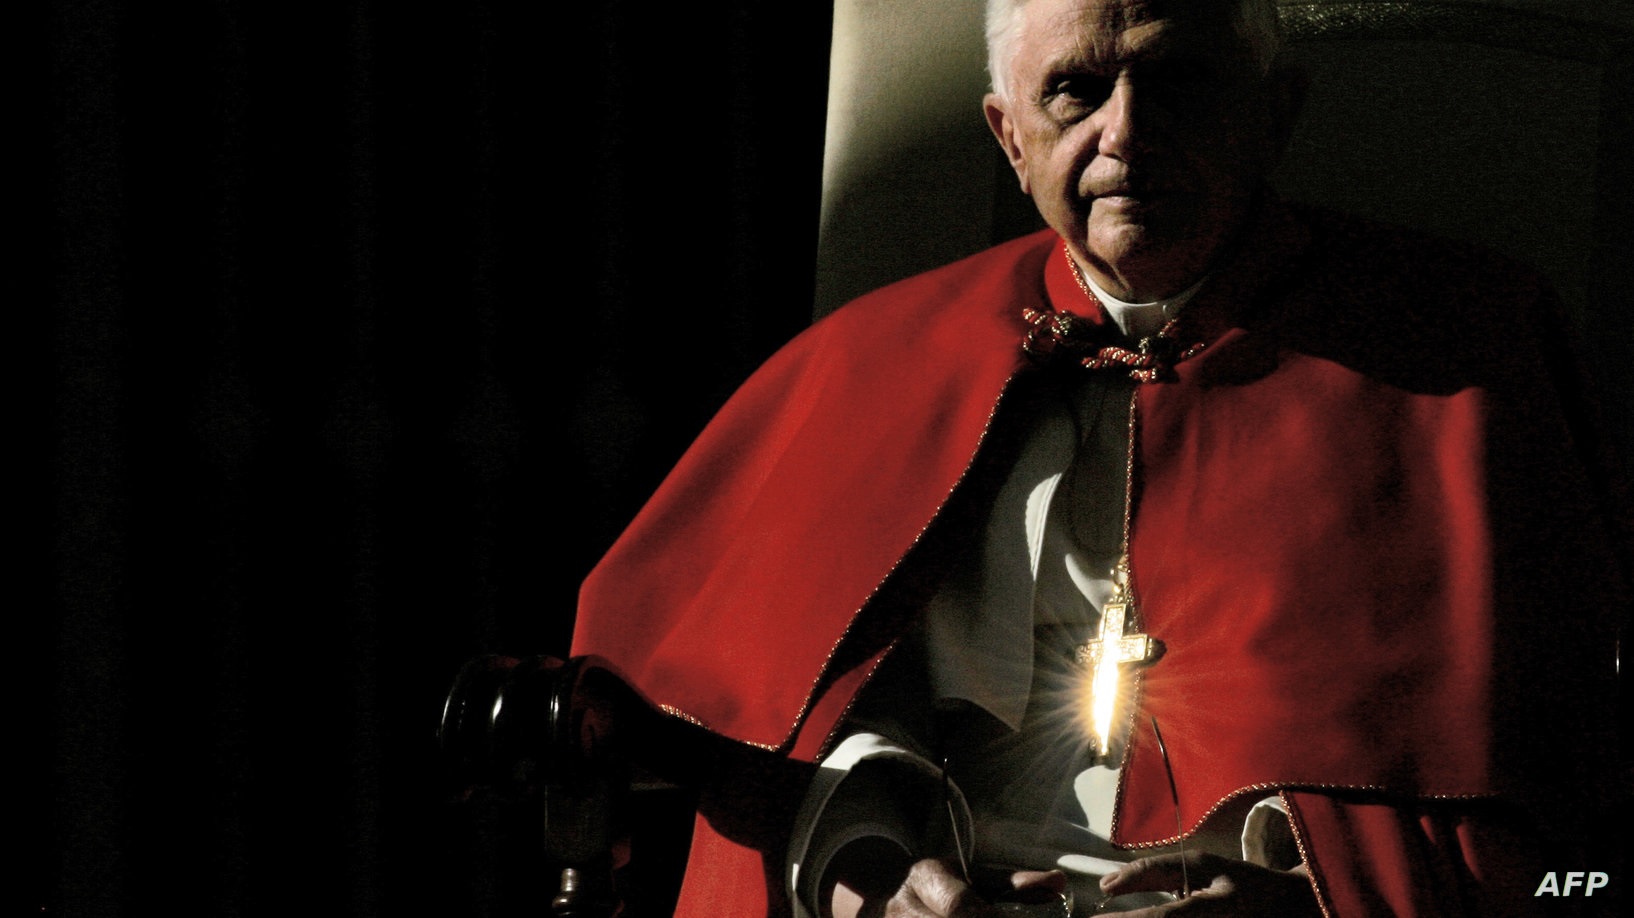 Бенедикт XVI стремился вернуть Бога в центр мира - Игнатенко